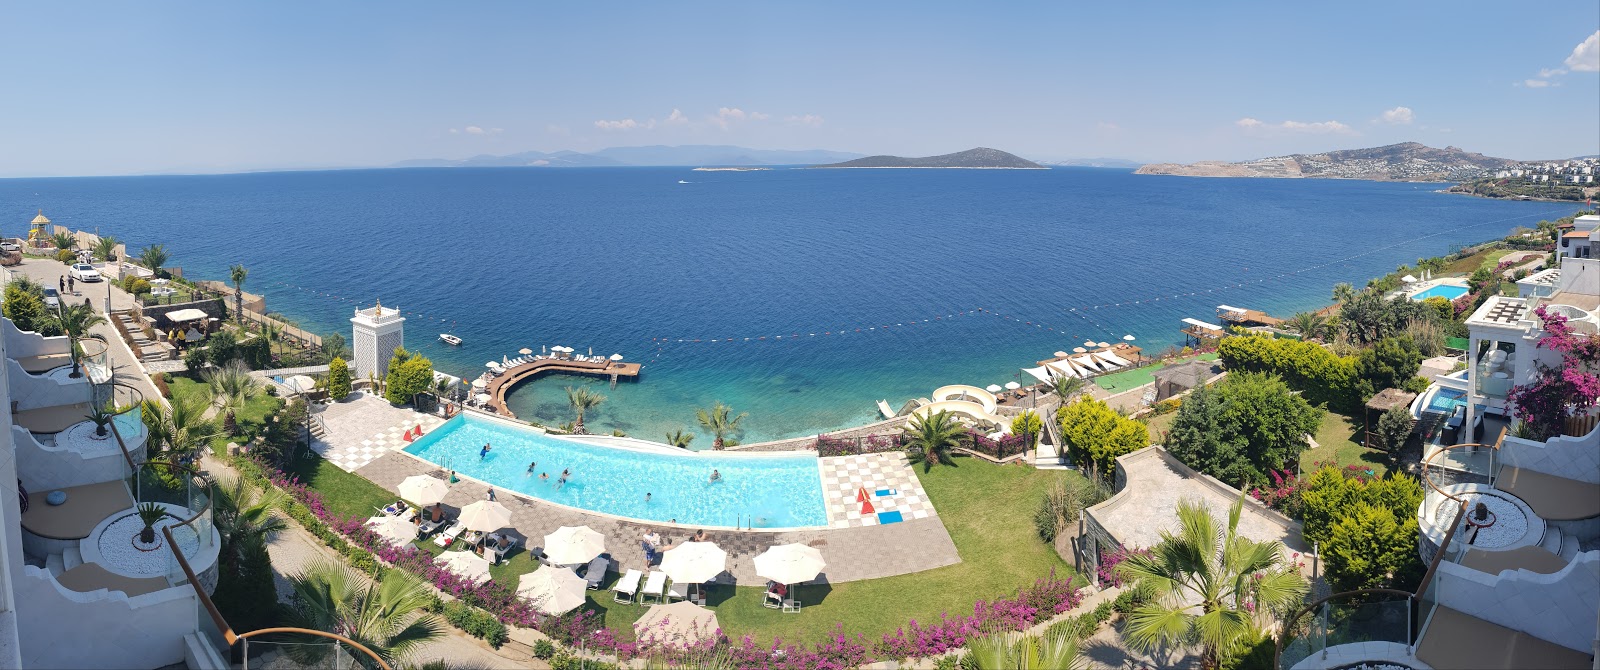 Fotografie cu Bvs Bosphorus Resort cu o suprafață de apa pură turcoaz